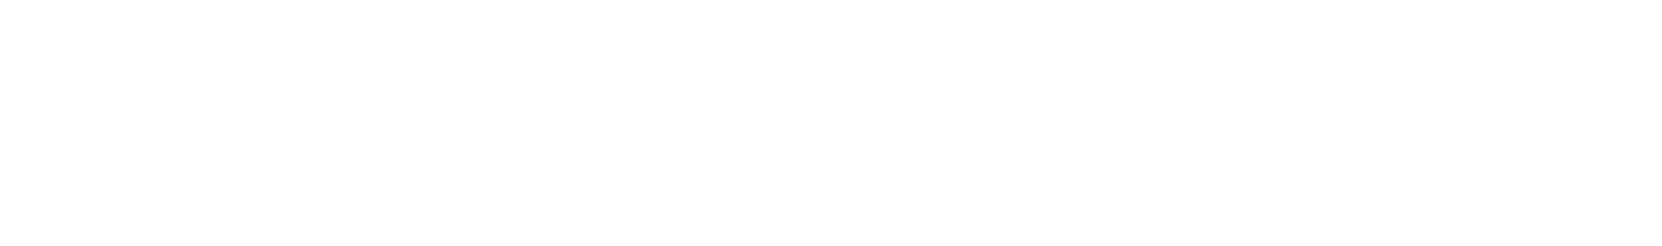 Sweetgreen logo large for dark backgrounds (transparent PNG)